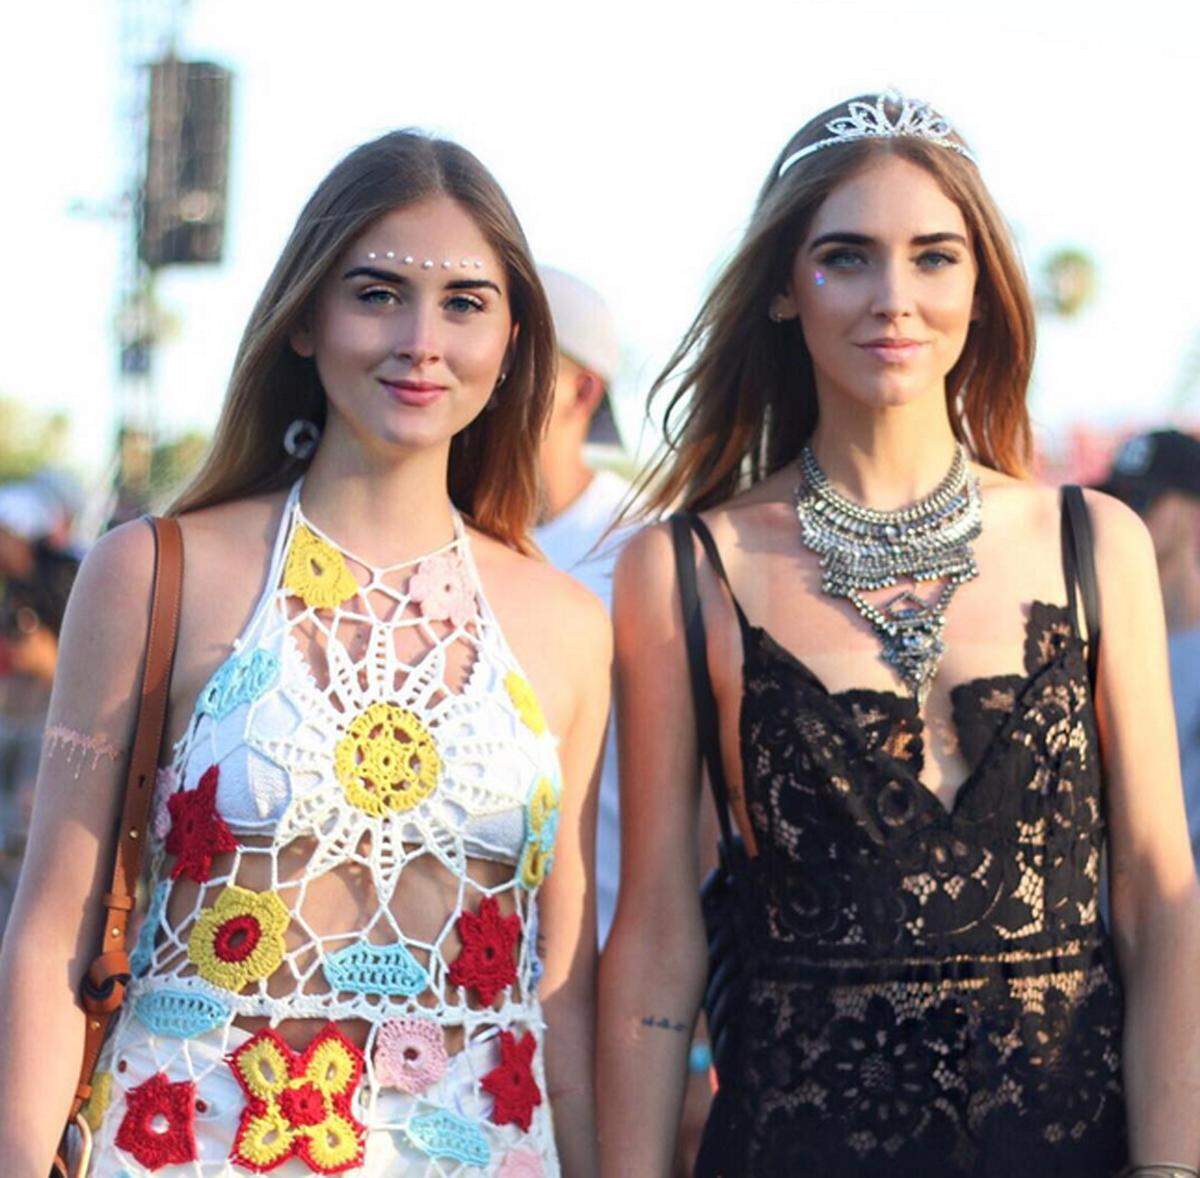 Auch in Sachen Haare und Make-up sind beim Coachella-Festival einige Trends zu erkennen. So sind etwa aufgeklebte Perlen oder Strasssteine im Gesicht ein wahrer Hingucker.